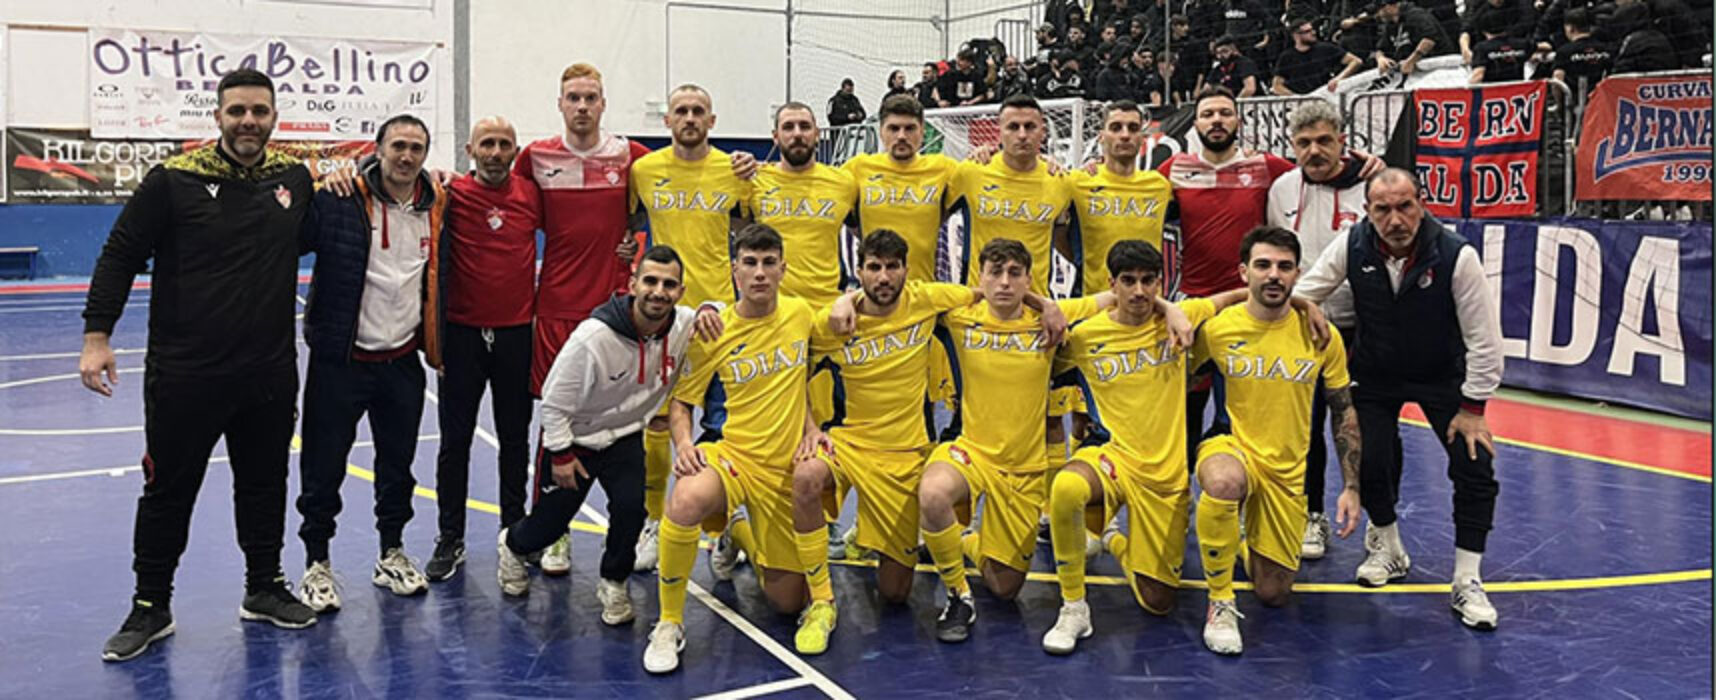 Futsal: Diaz ospita l’Alta Futsal per chiudere in vetta il girone d’andata